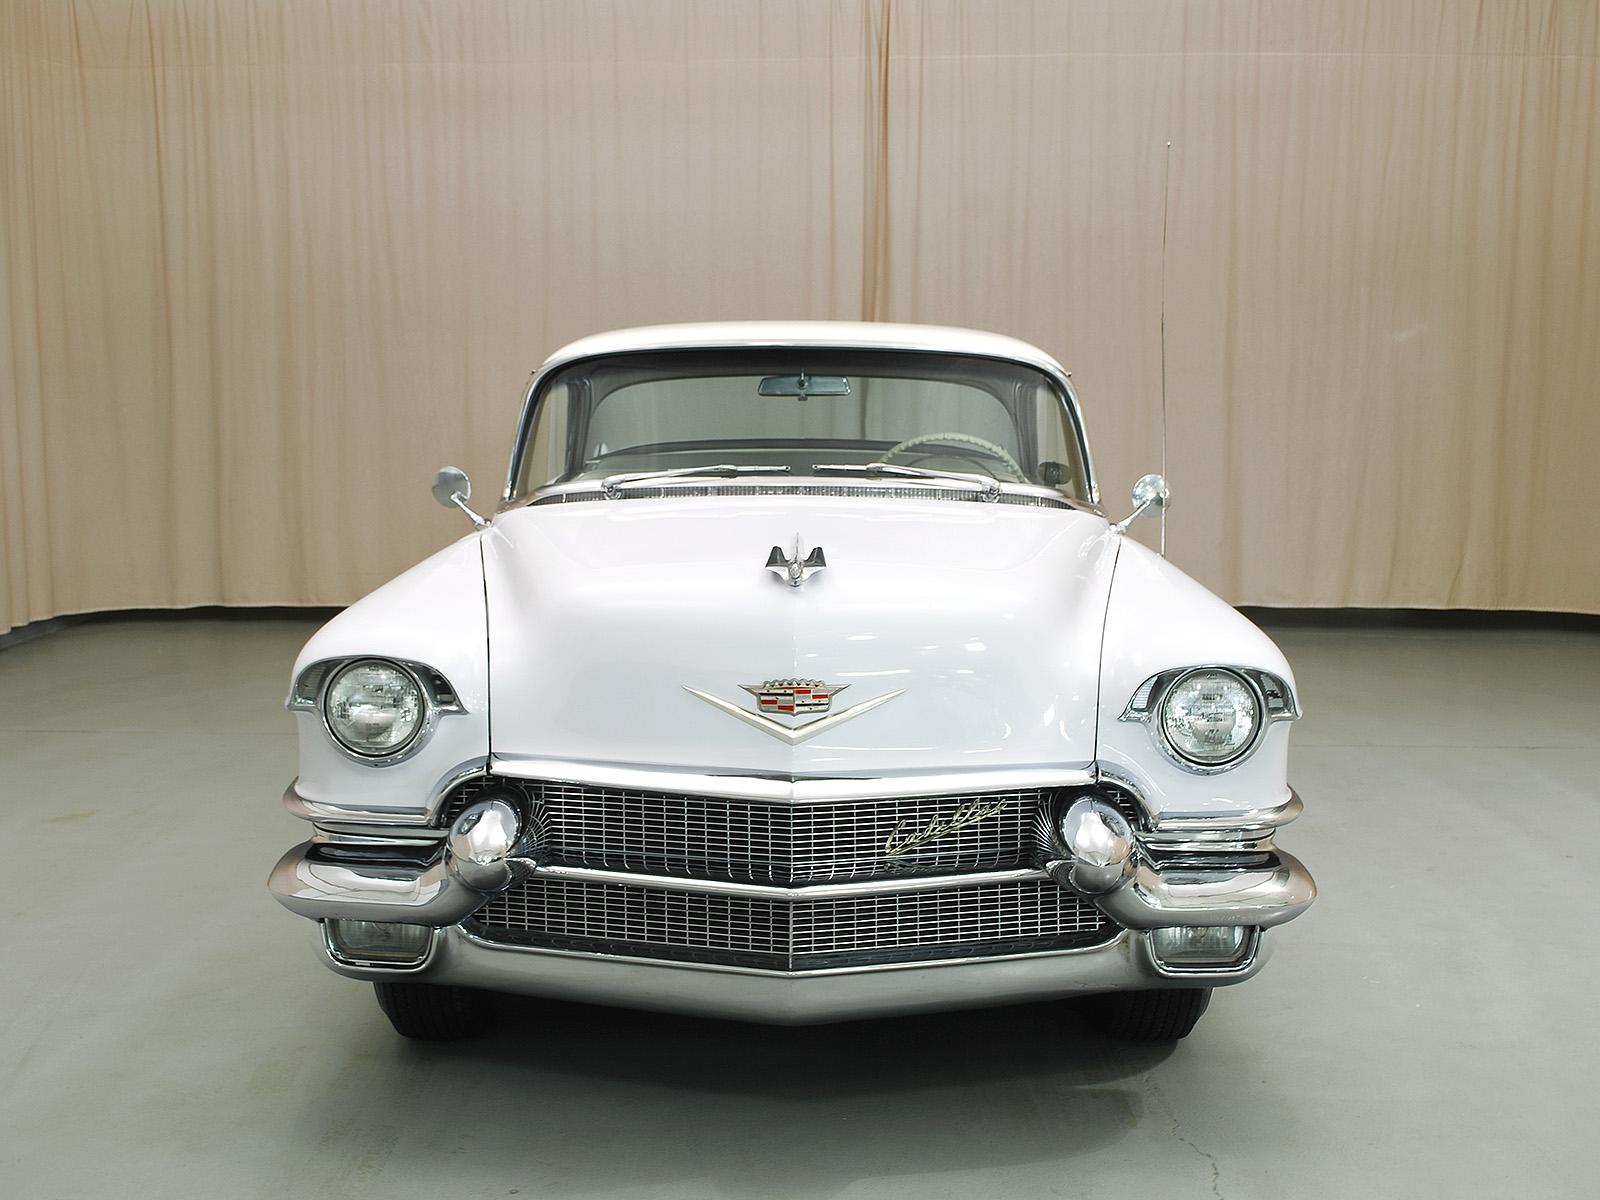 1957 cadillac series 62 sedan de ville